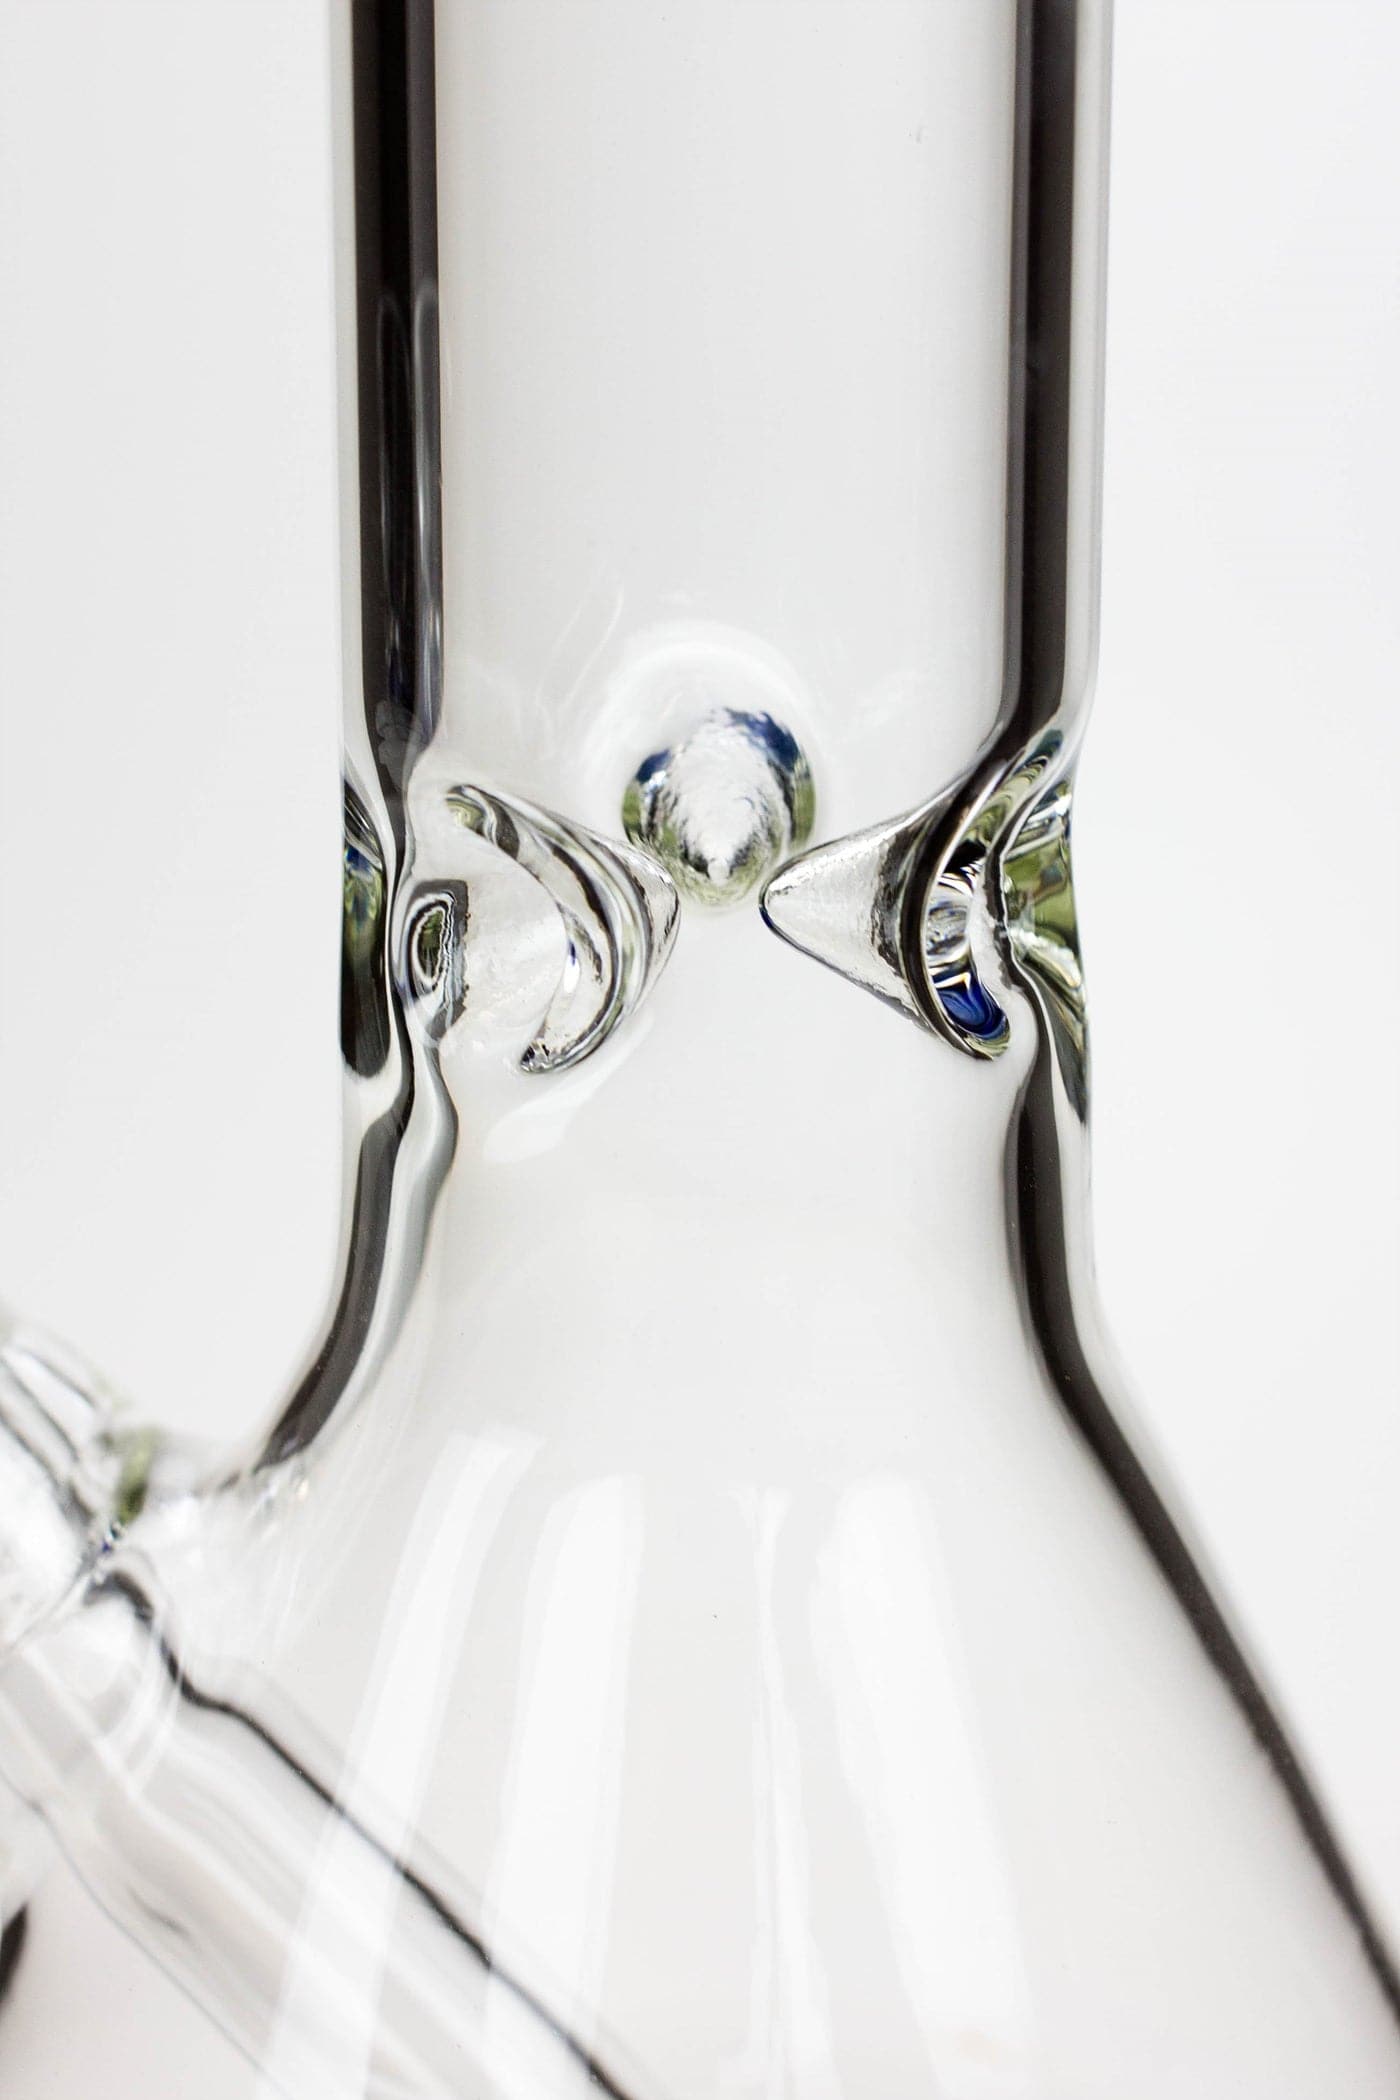 Valcano beaker glass water pipe